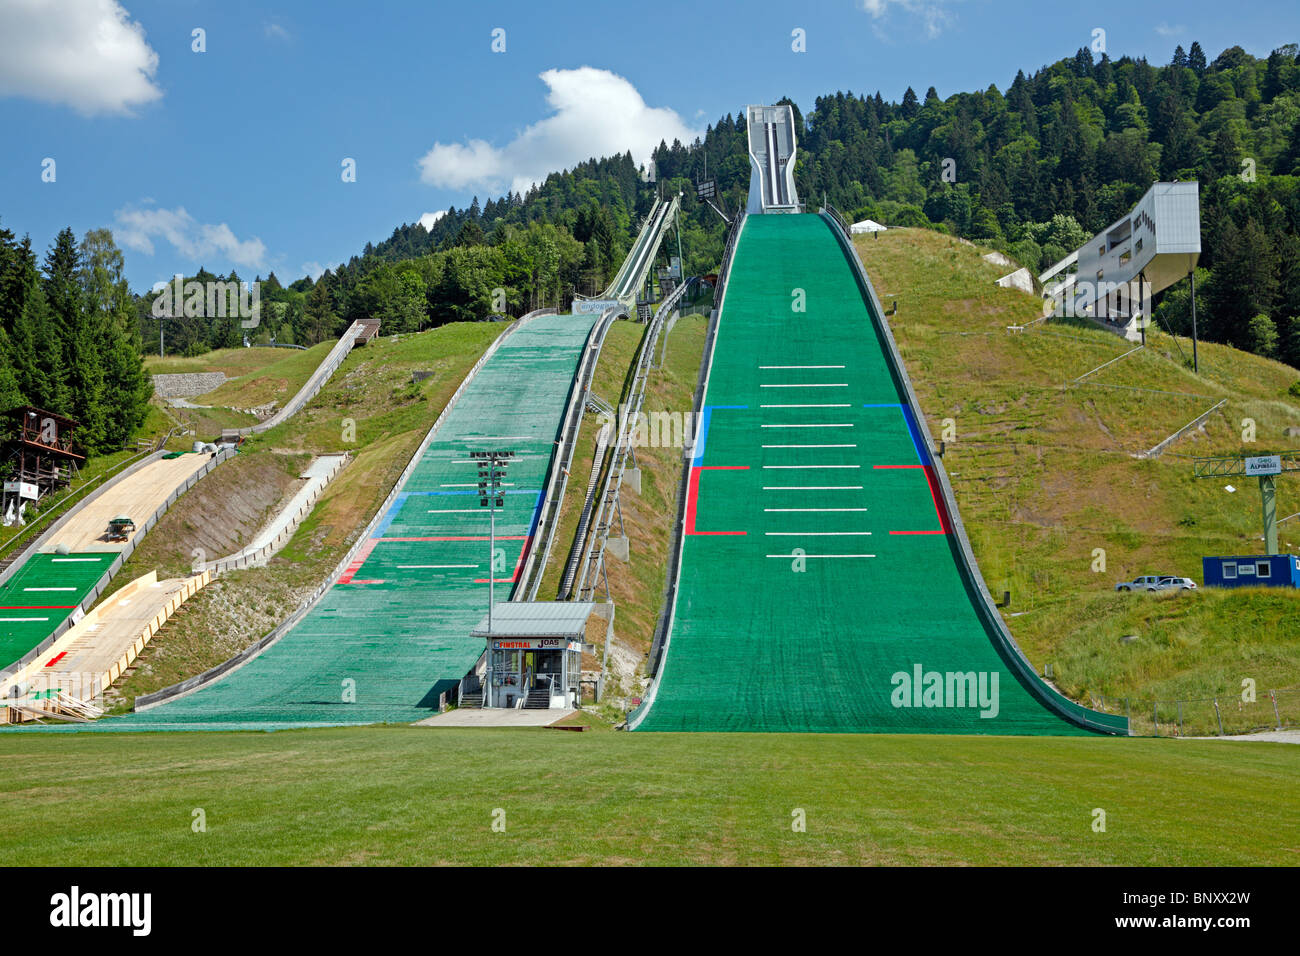 Die Sprungschanzen am Olympia Skistadion in Garmisch-Partenkirchen, Bayern, Deutschland. Stockfoto